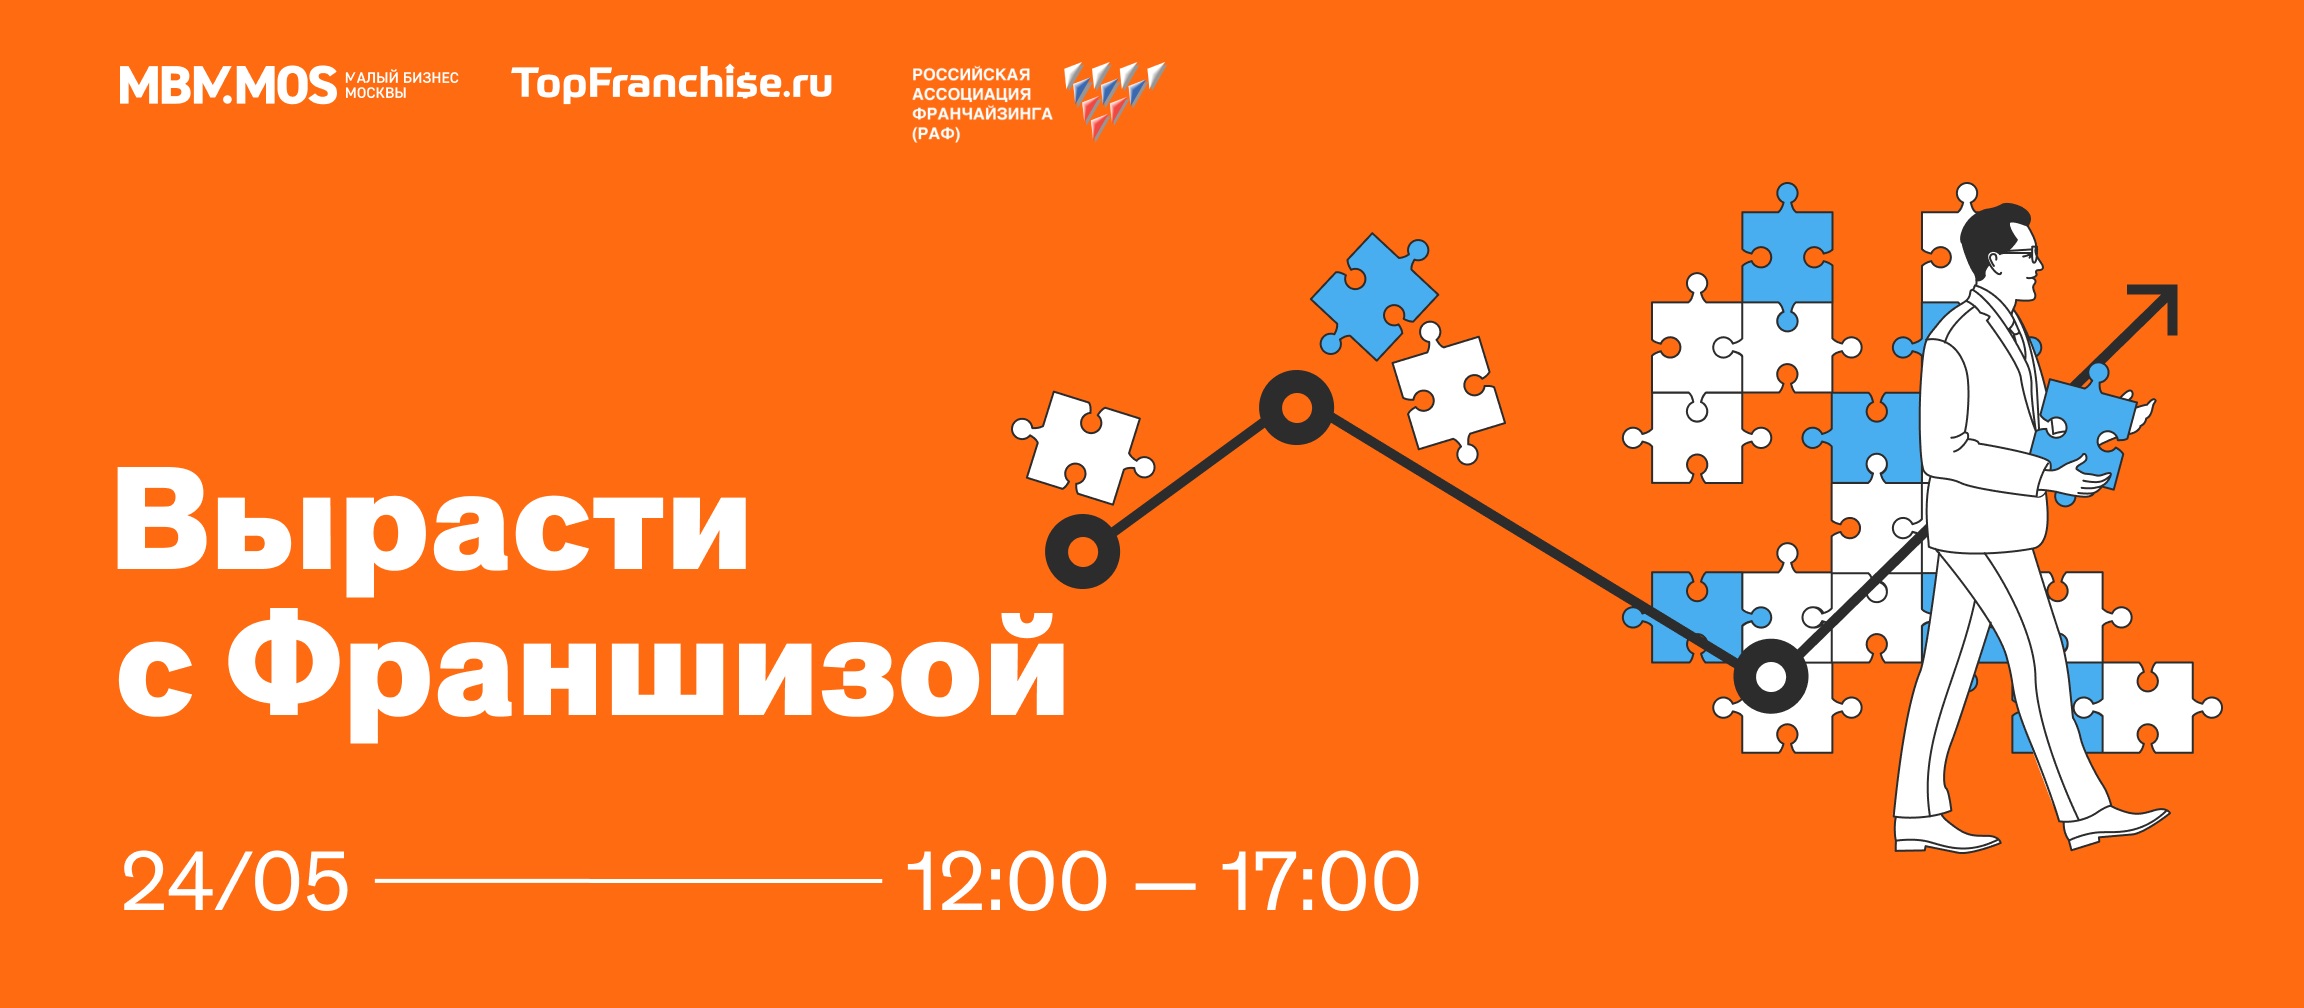 24 мая – очная конференция по франчайзингу на площадке StartHub.Moscow, Красный Октябрь